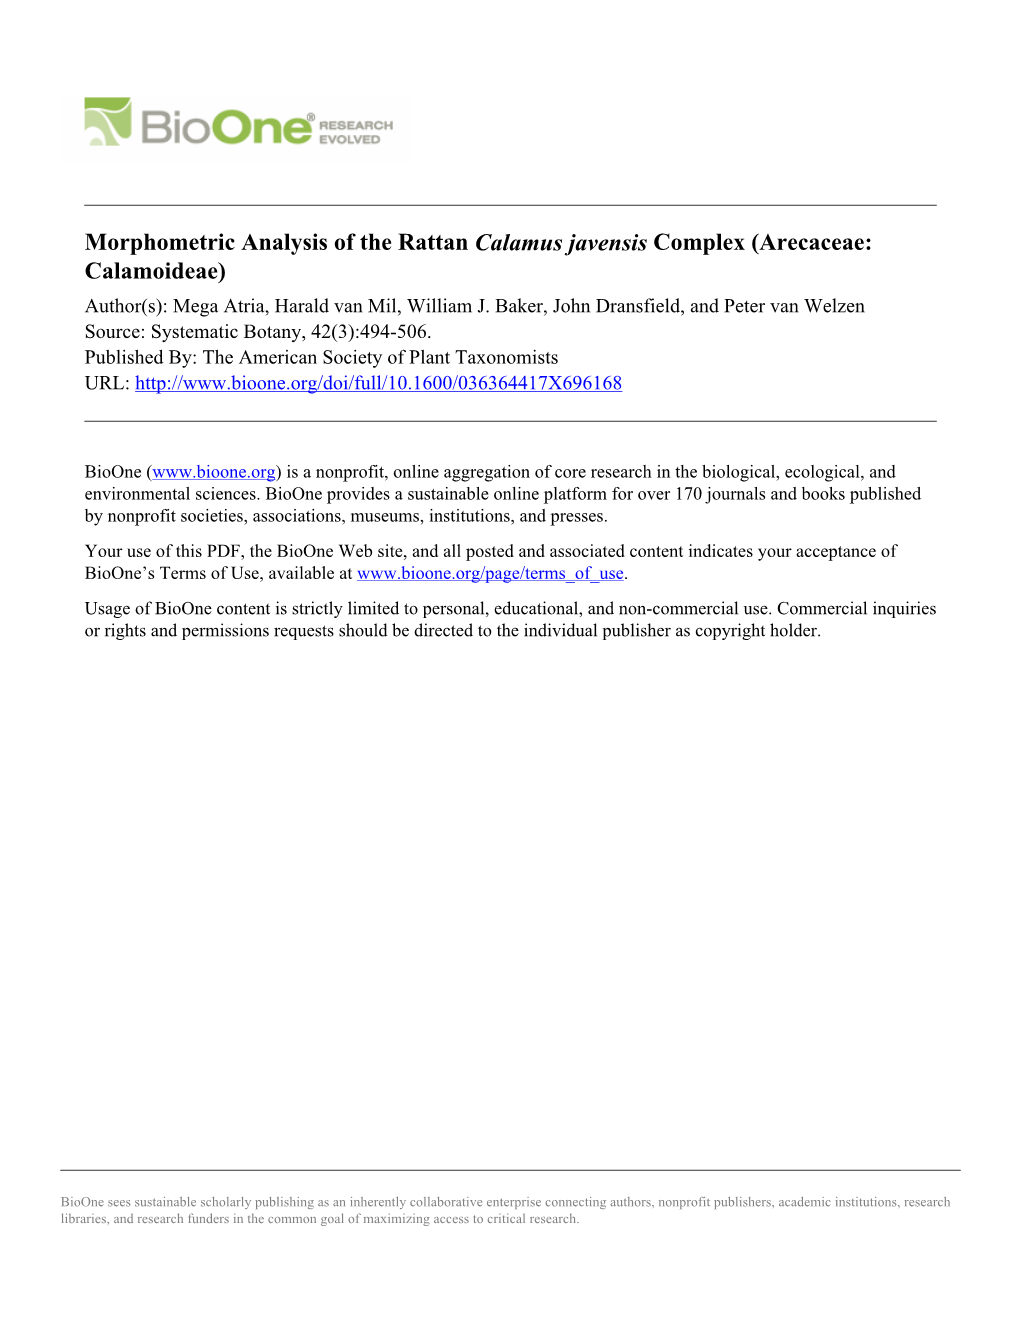 Morphometric Analysis of the Rattan Calamus Javensis Complex (Arecaceae: Calamoideae) Author(S): Mega Atria, Harald Van Mil, William J